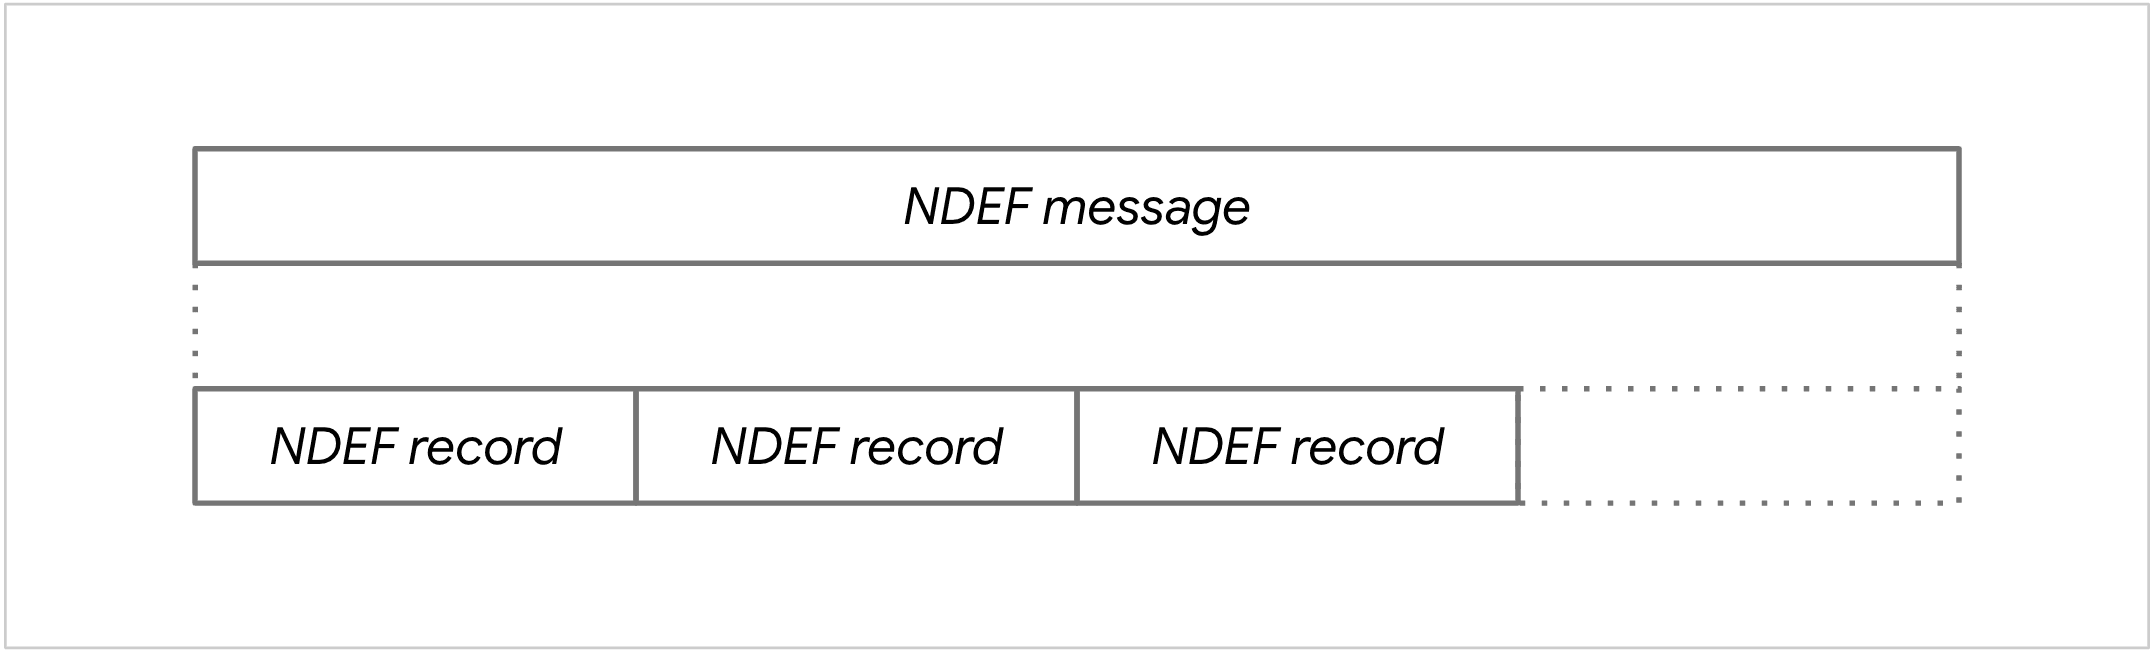 Схема NDEF-сообщения